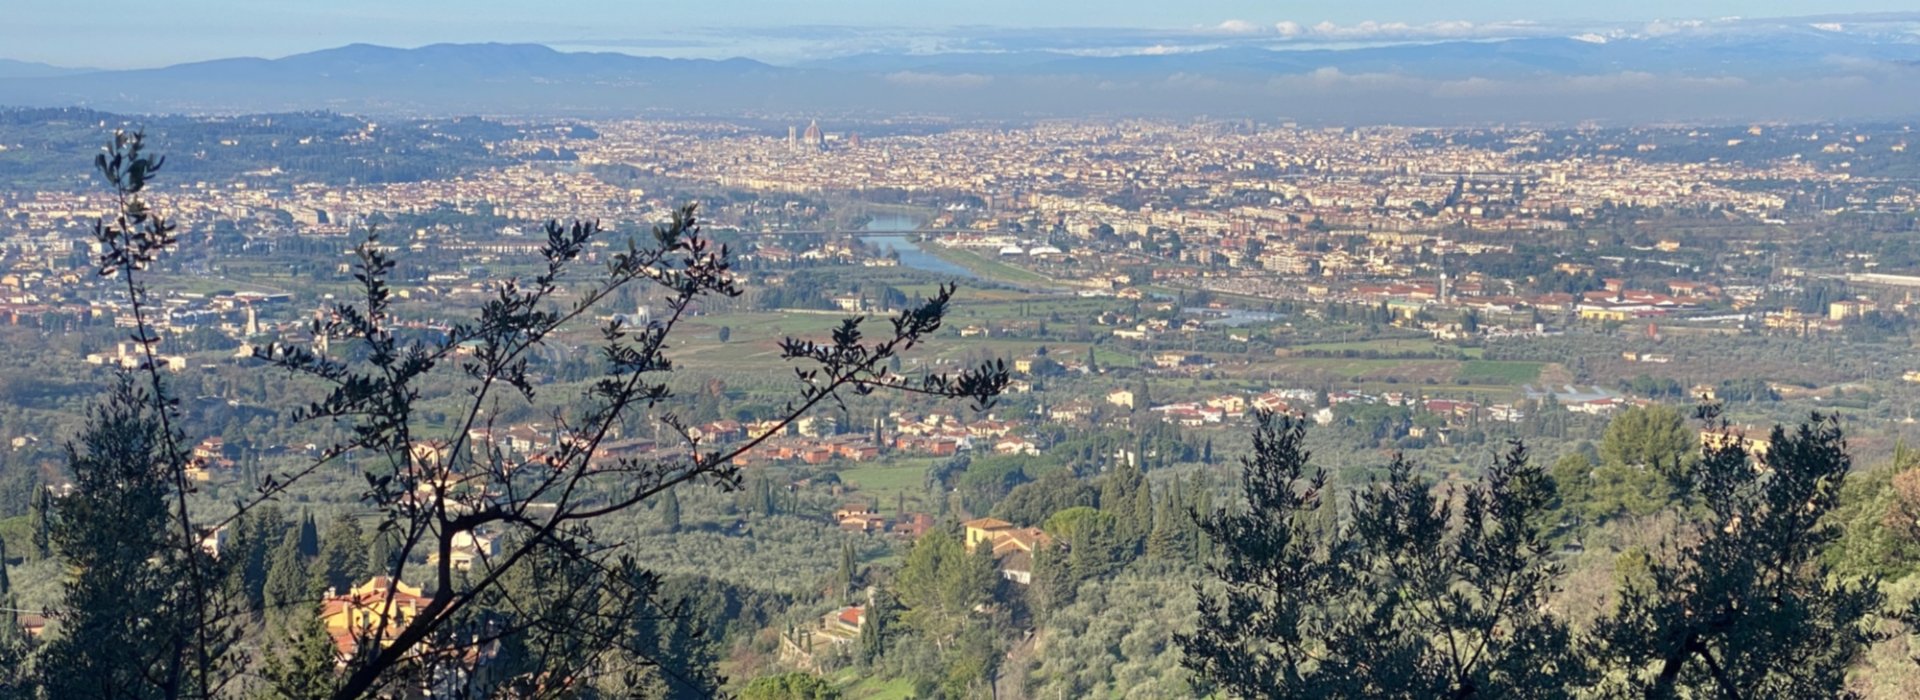 Passeggiate intorno a Firenze per conoscere il territorio e i prodotti locali soggiornando in agriturismo